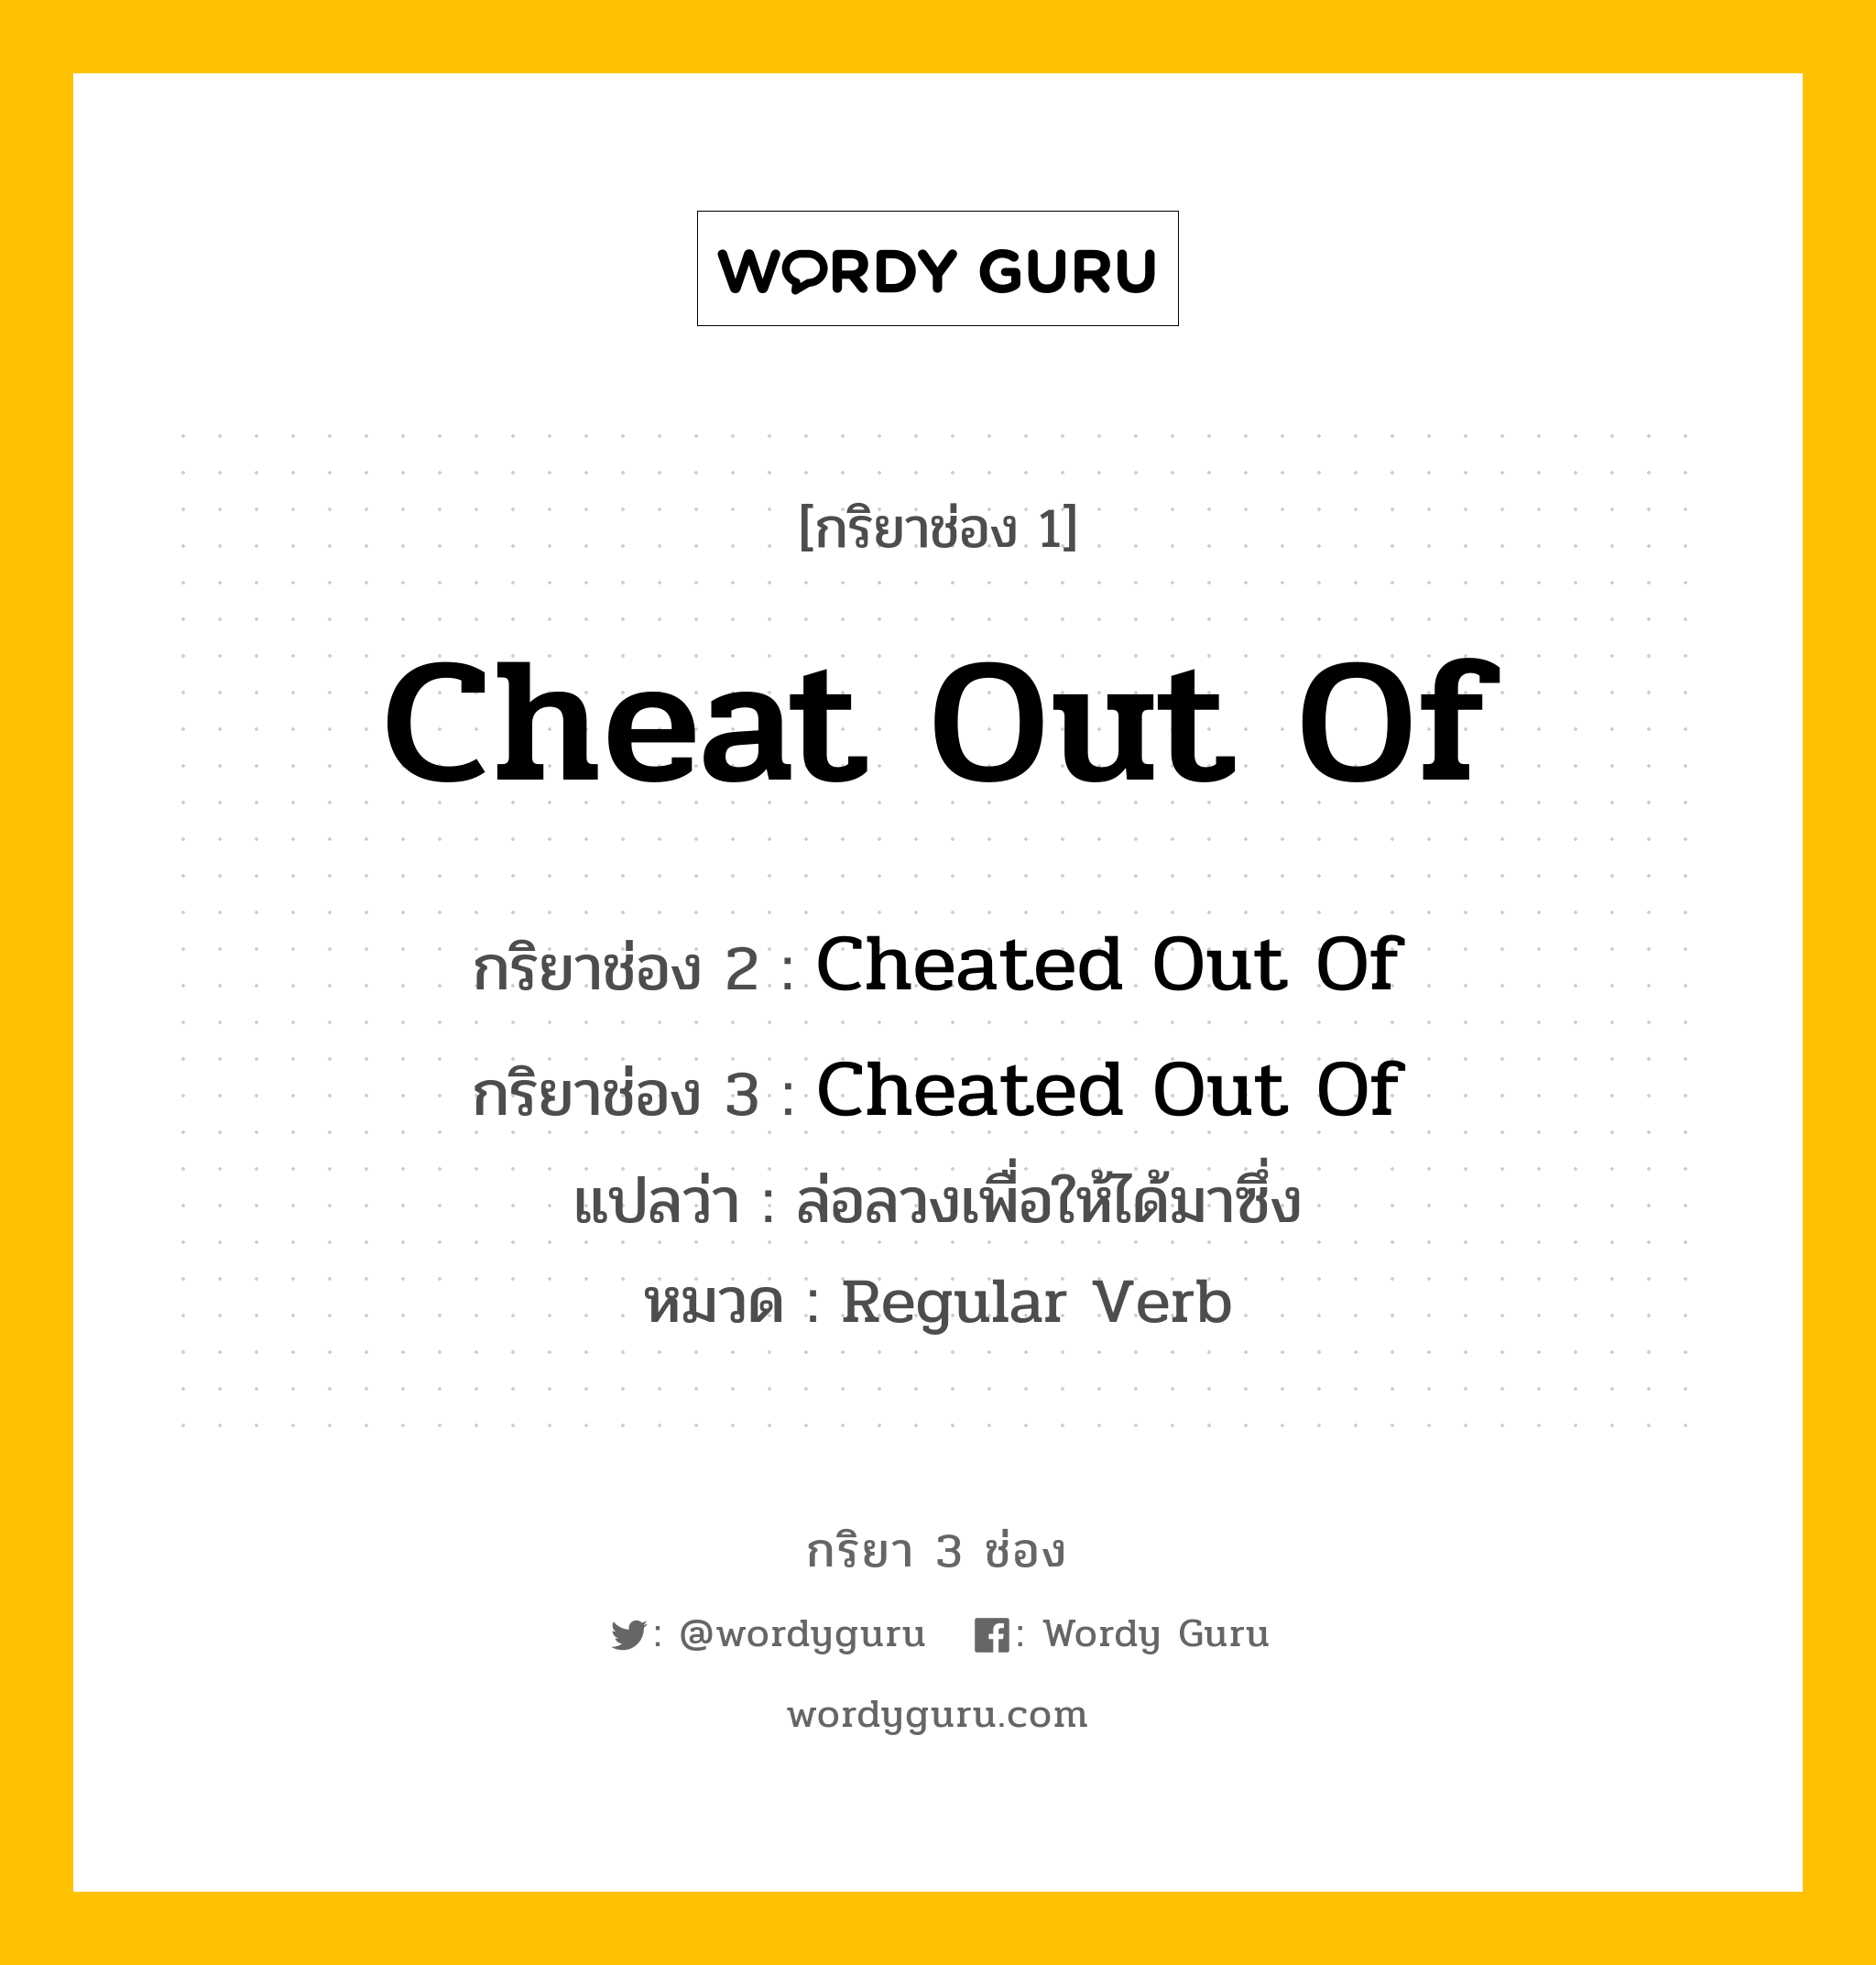 กริยา 3 ช่อง ของ Cheat Out Of คืออะไร?, กริยาช่อง 1 Cheat Out Of กริยาช่อง 2 Cheated Out Of กริยาช่อง 3 Cheated Out Of แปลว่า ล่อลวงเพื่อให้ได้มาซึ่ง หมวด Regular Verb หมวด Regular Verb